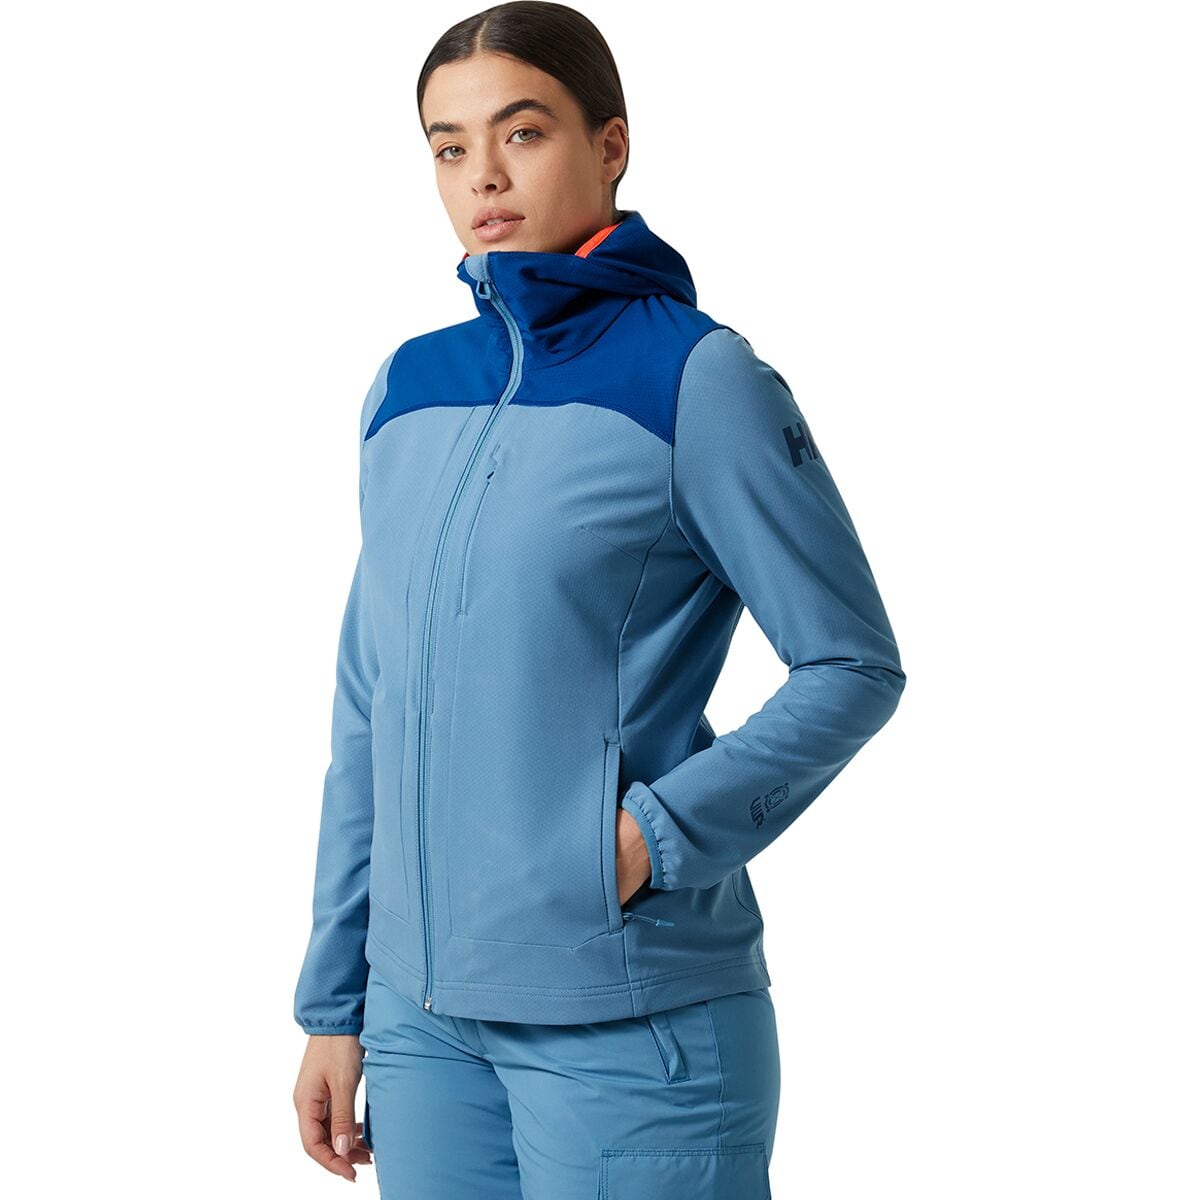 Aurora Shield Fleece Jacket - Women